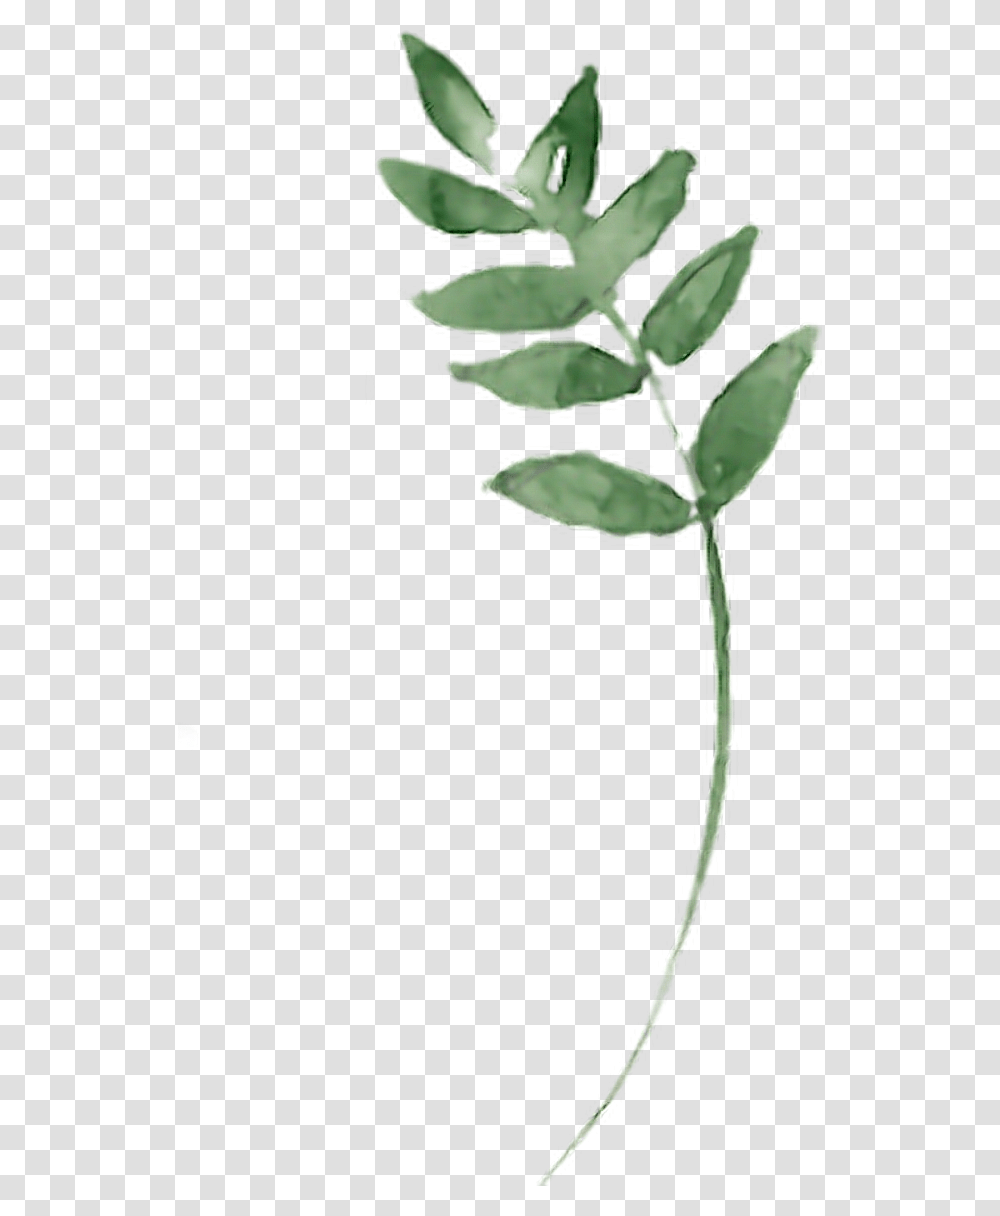 Twig Branches Branch Aquarelle Leaf Leaves Green Bay Laurel, Plant, Flower, Blossom, Vegetation Transparent Png